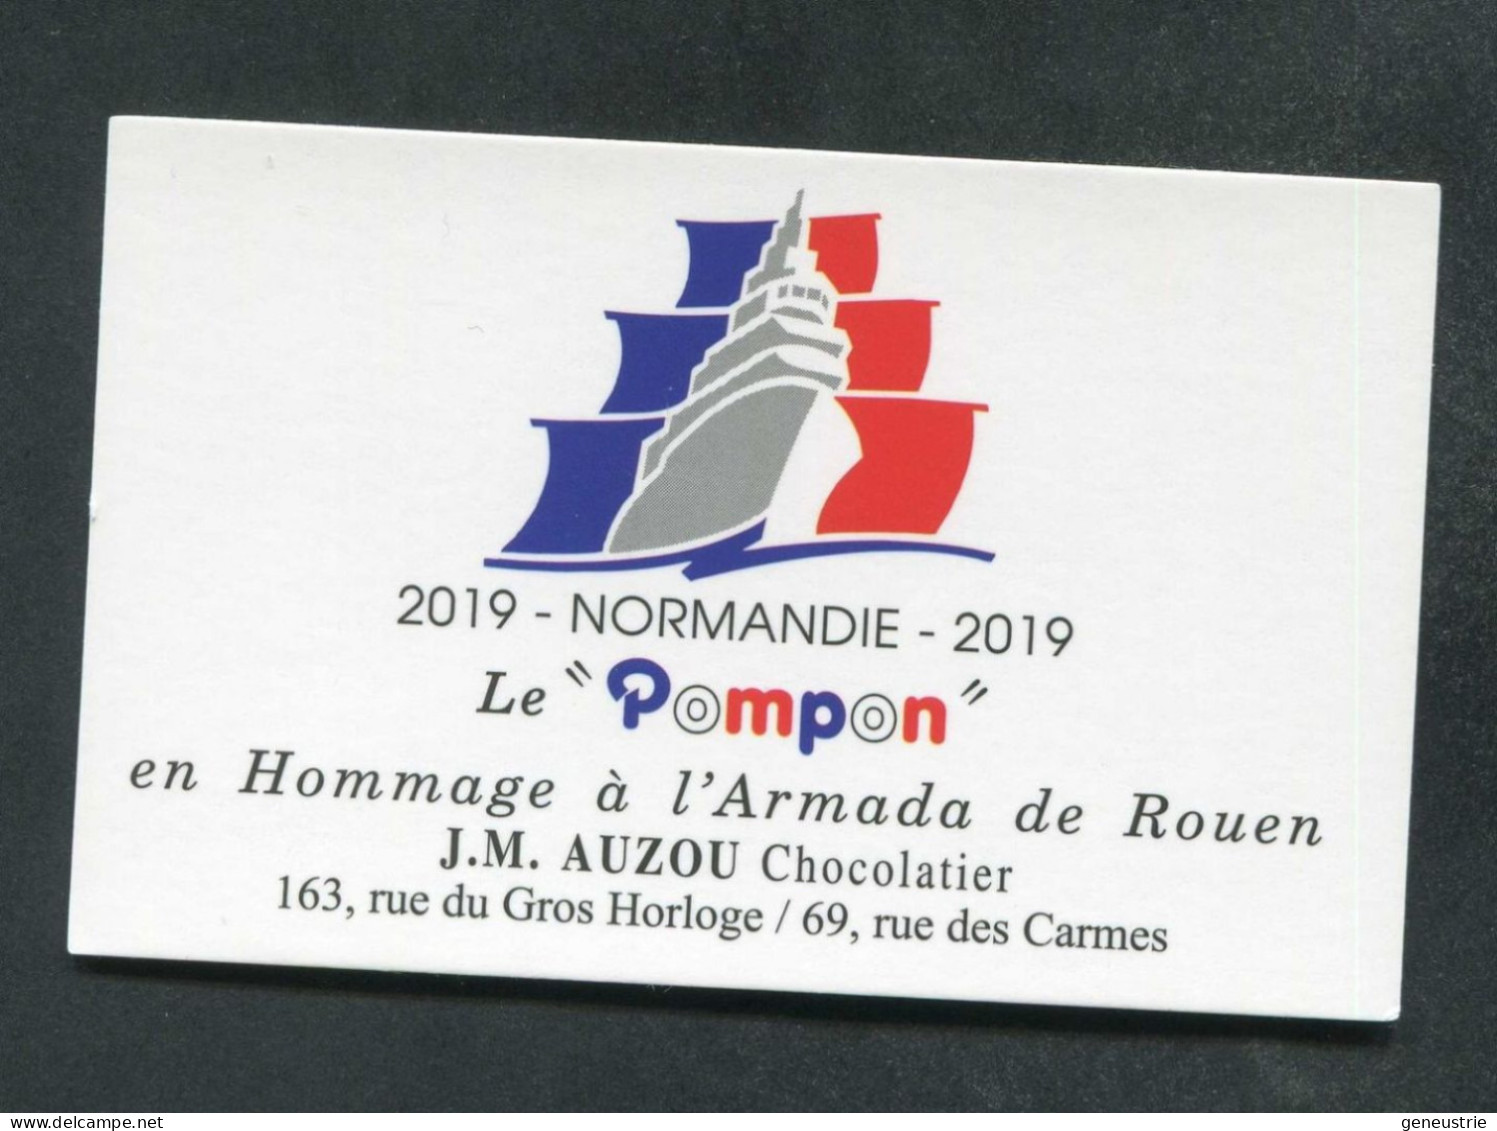 Carte De Visite "Le Pompon" En Hommage à L'Armada De Rouen - Normandie 2019 - J.M. Auzou Chocolatier - Visitenkarten